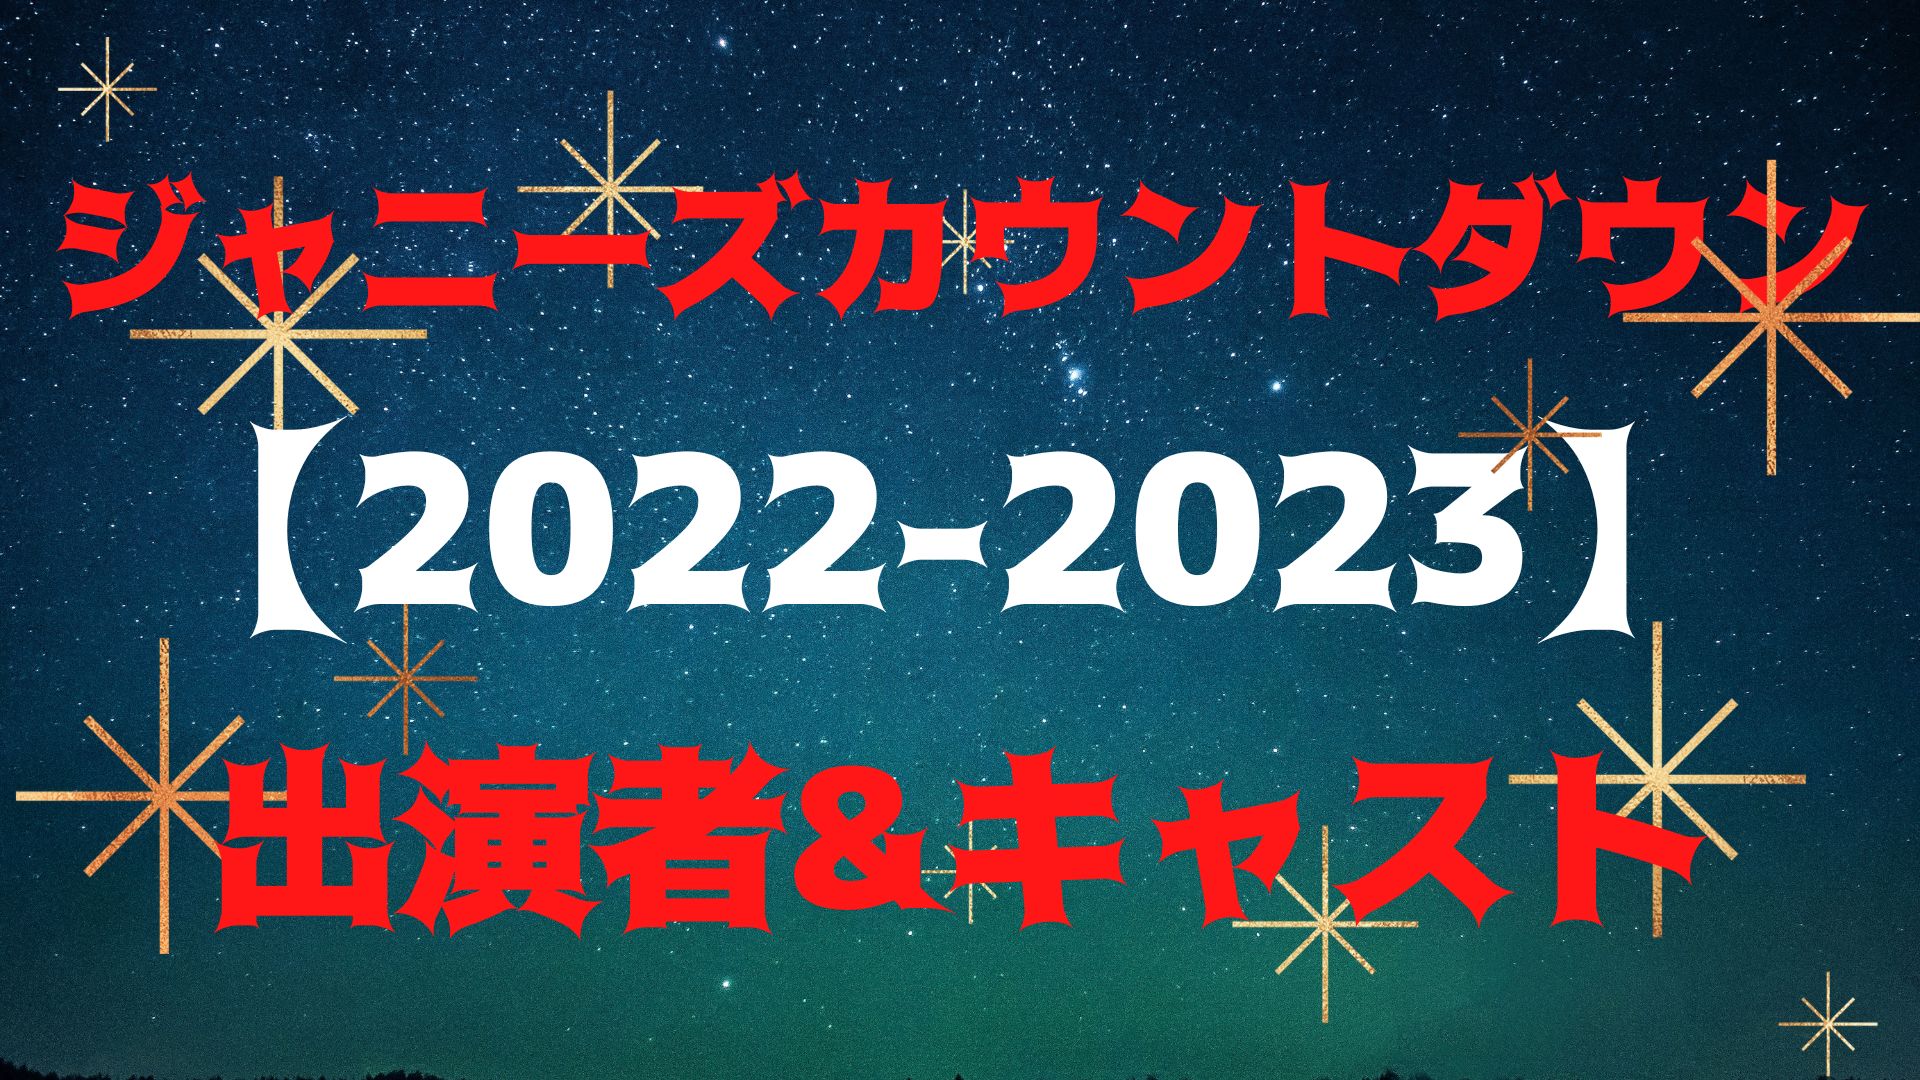 ジャニーズカウントダウン【2022-2023】出演者